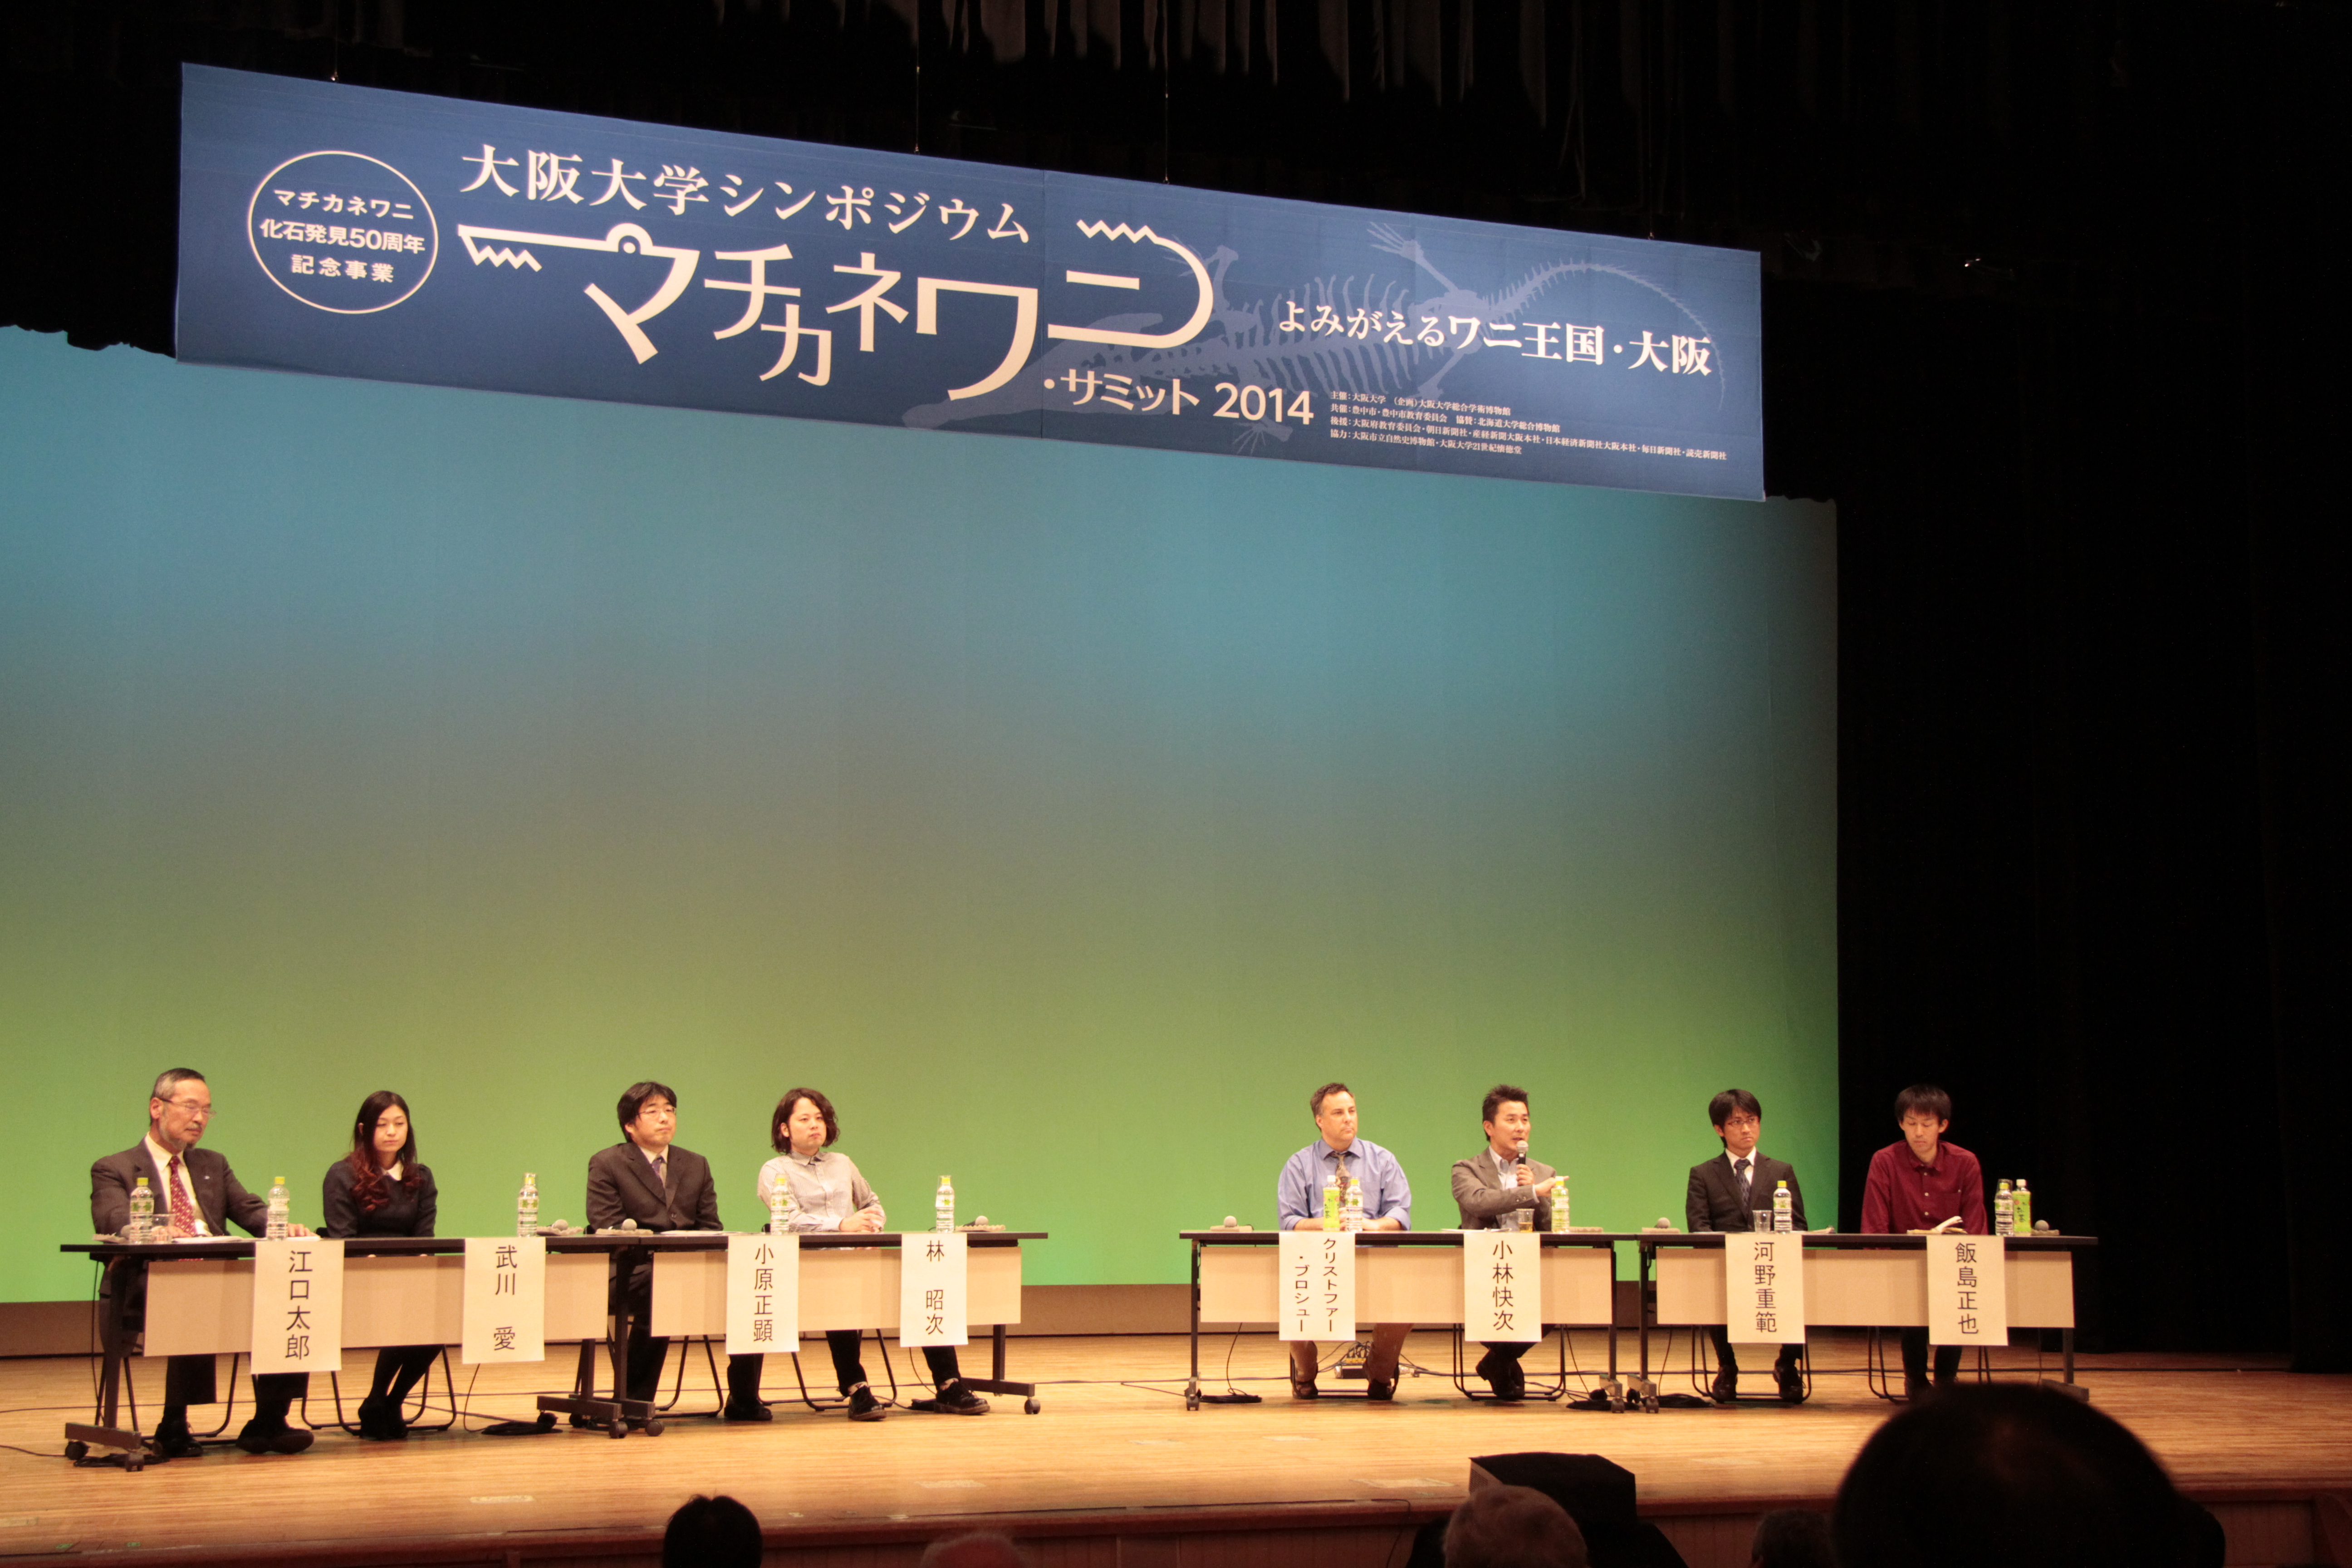 大阪大学シンポジウム「マチカネワニ・サミット」開催